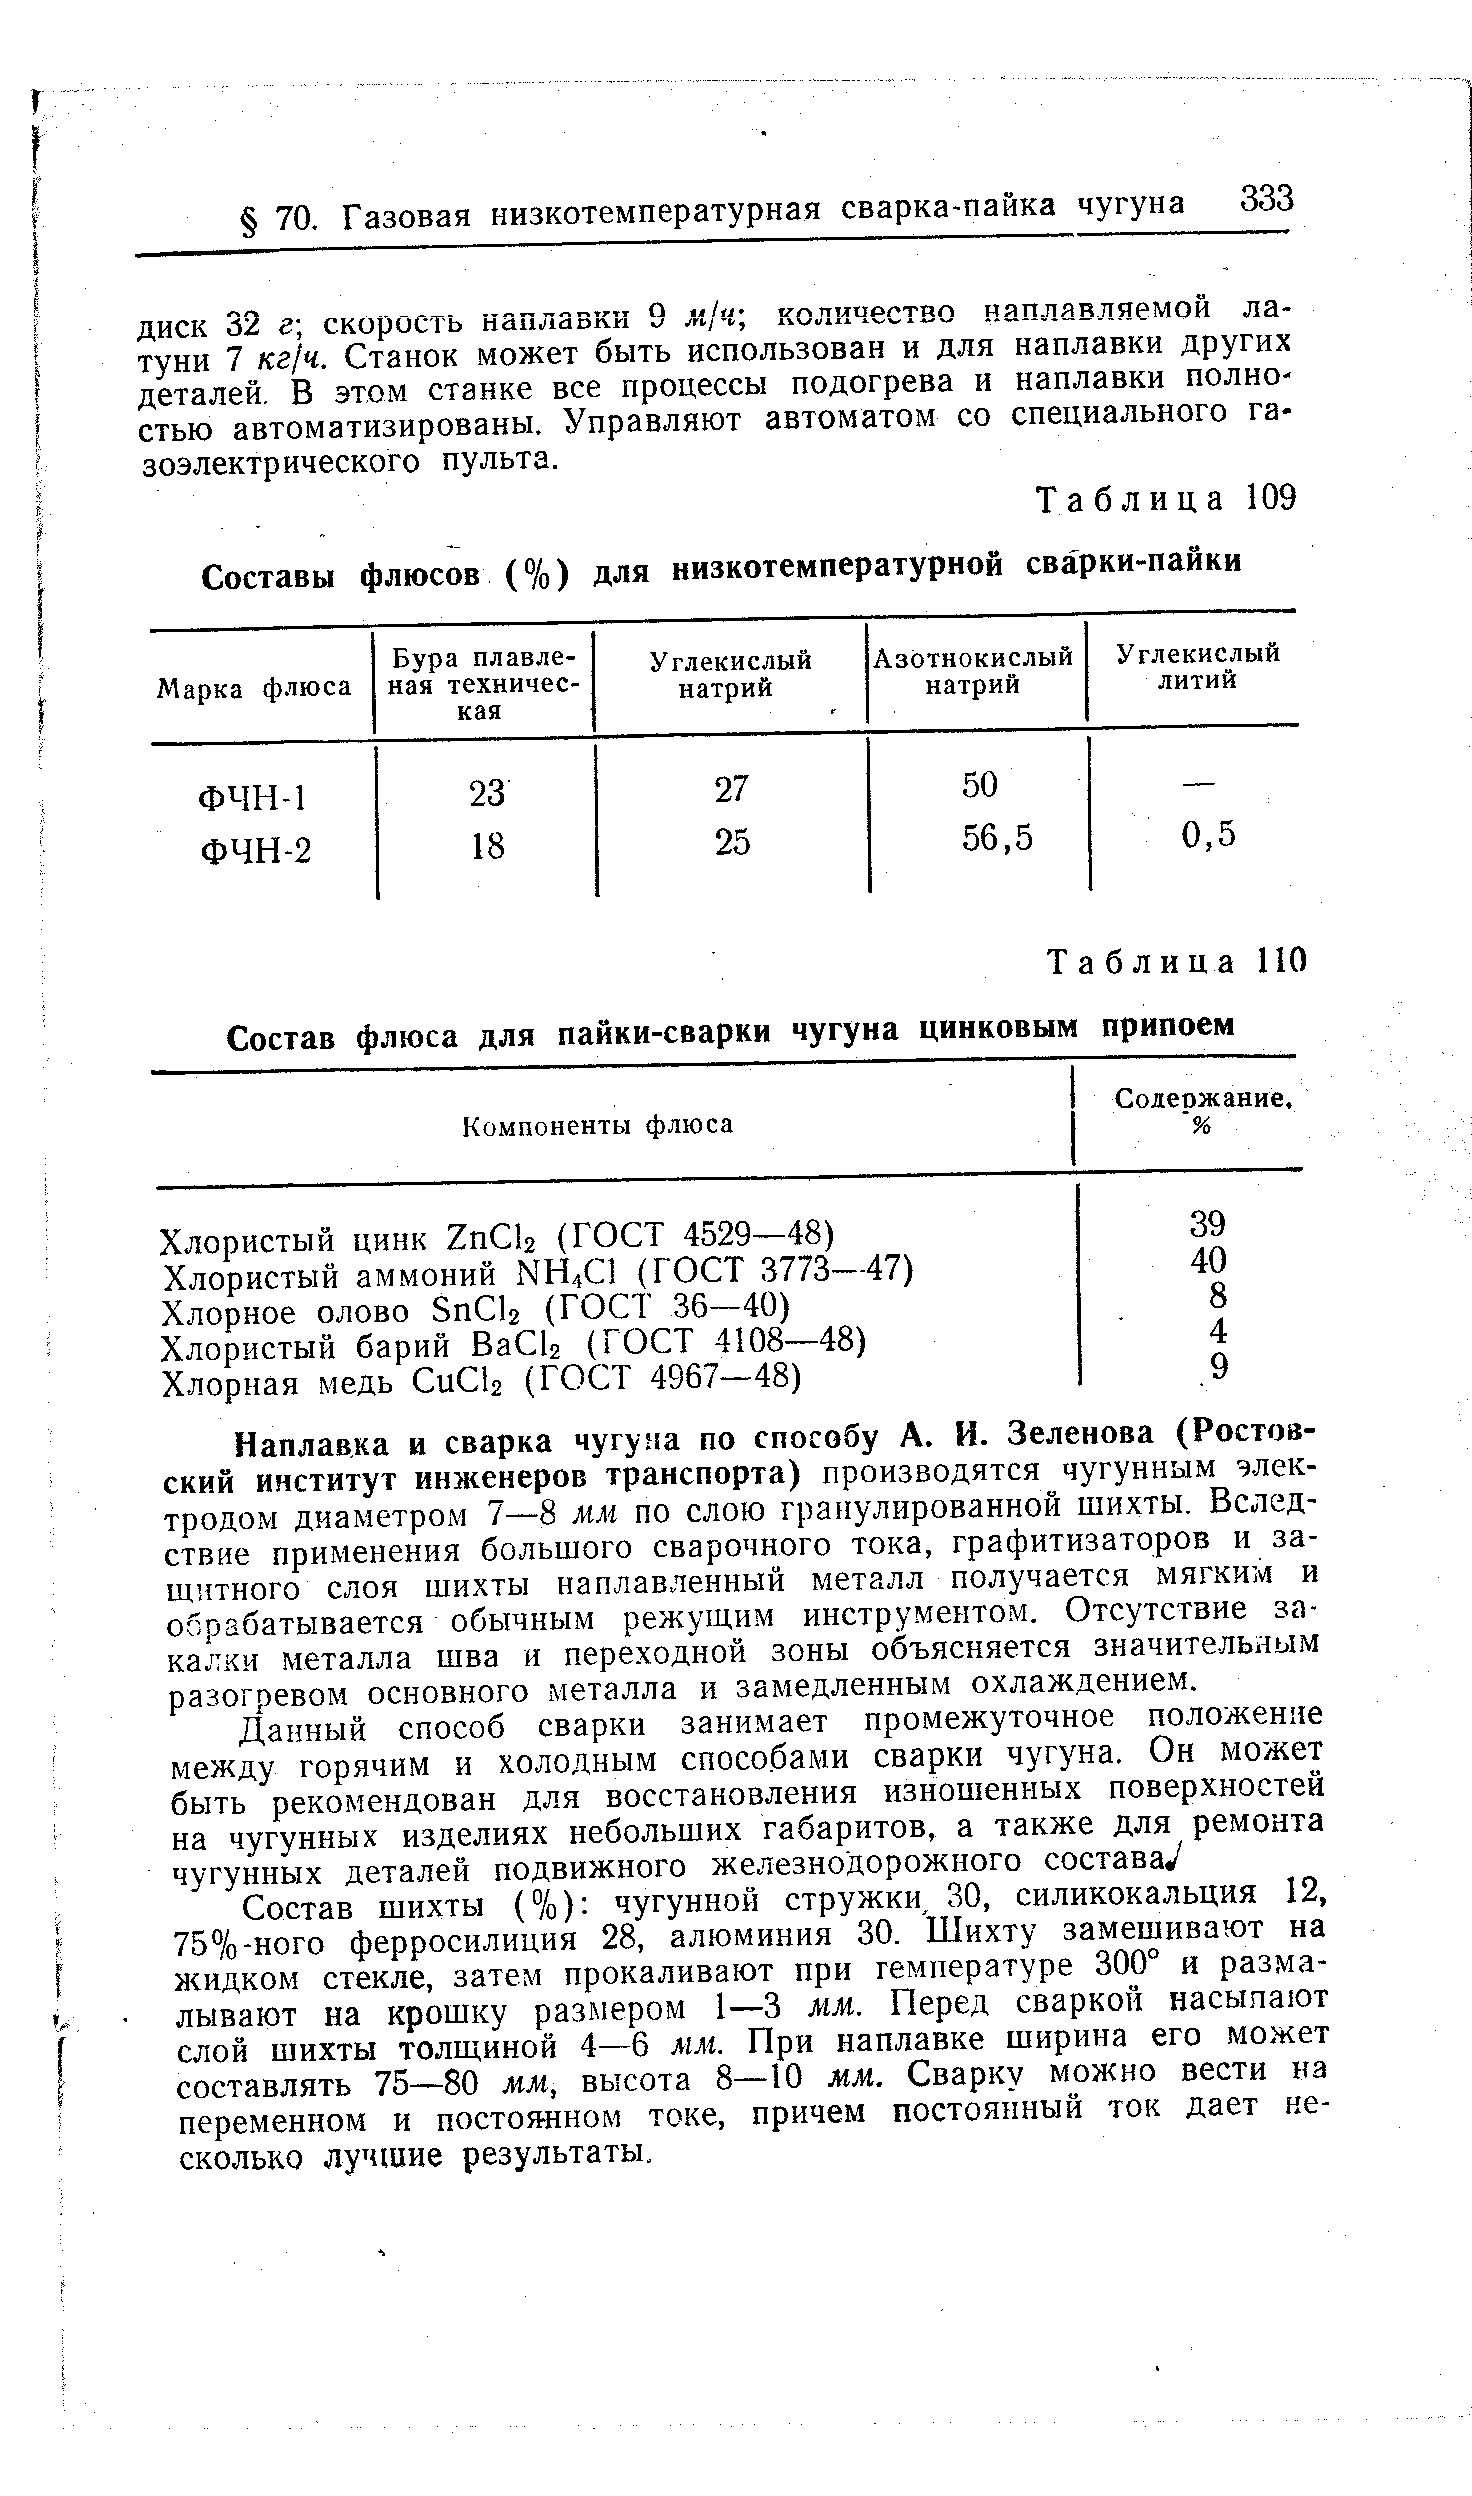 Таблица 109 Составы флюсов (%) для низкотемпературной сварки-пайки
